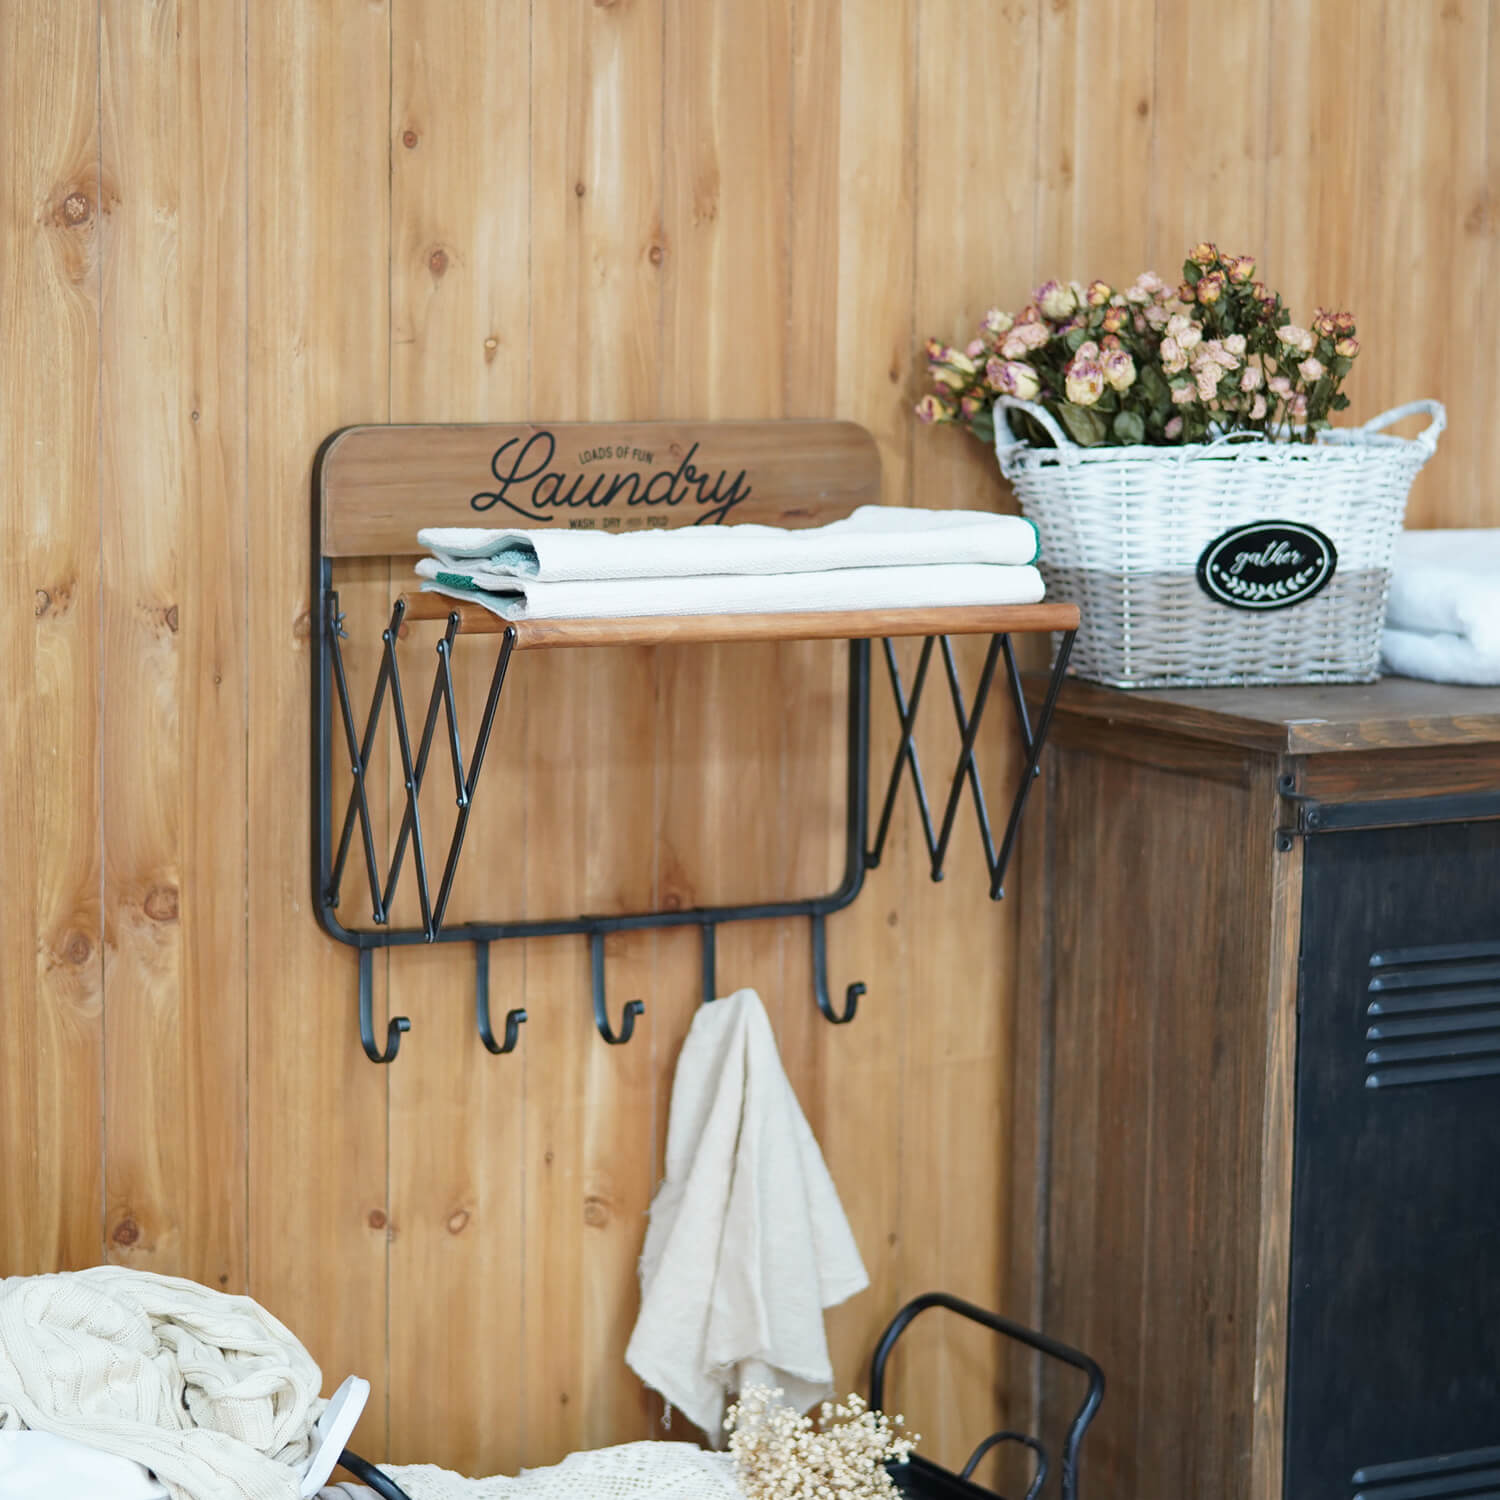 Autumn Alley Barn Door Rustic Bathroom Towel Rack | Warm Brown Wood and